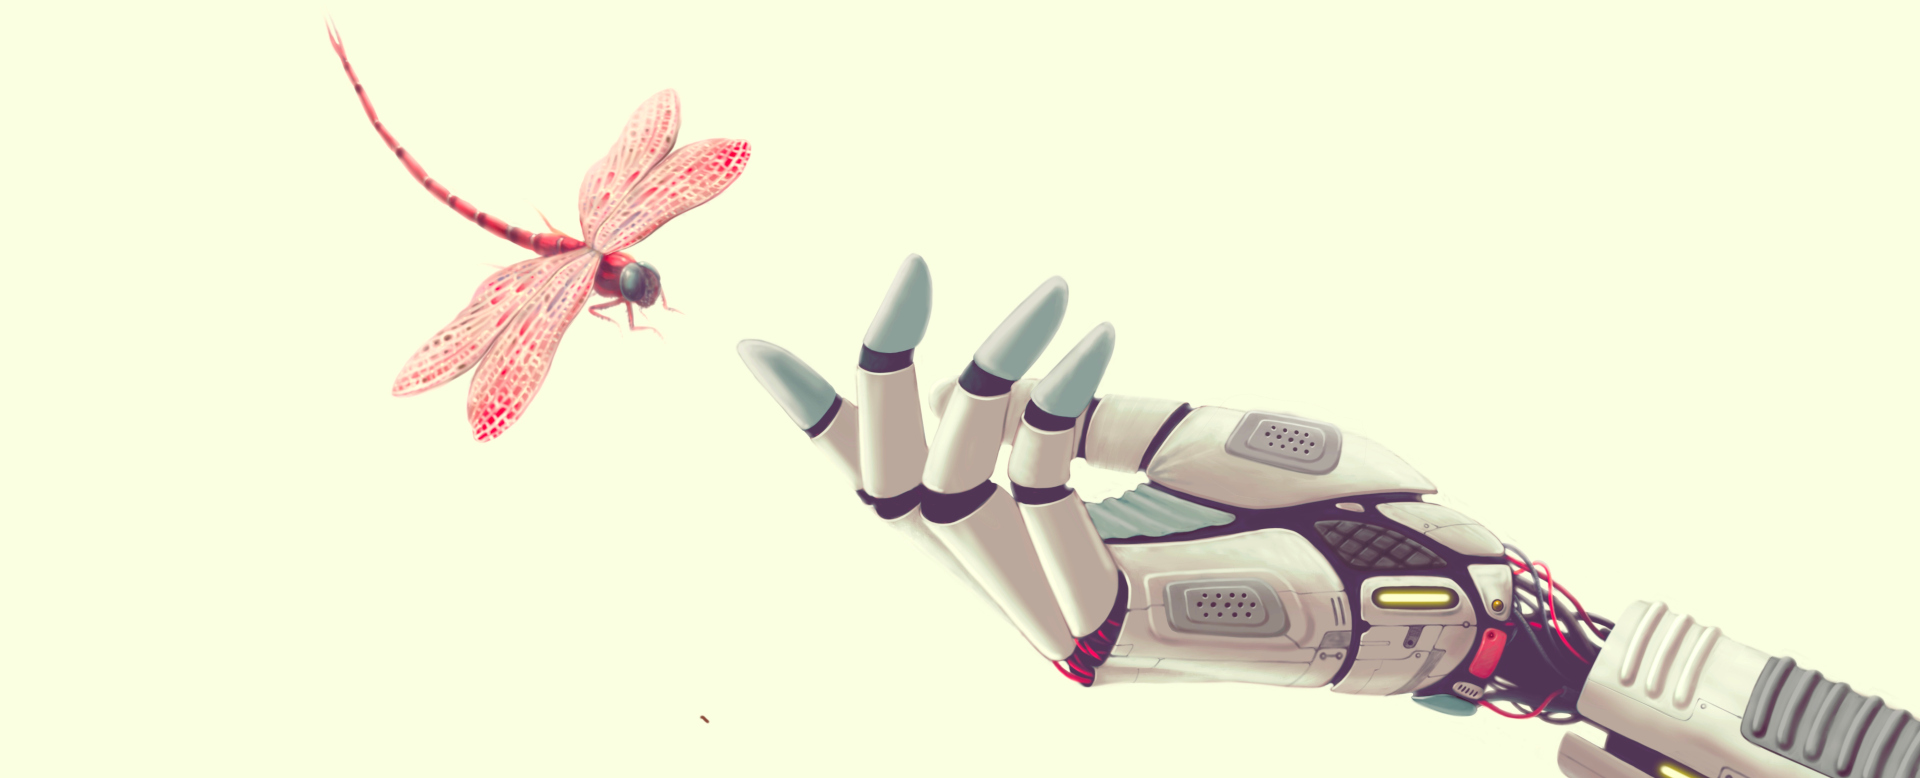 Libellule se posant sur une main de robot.